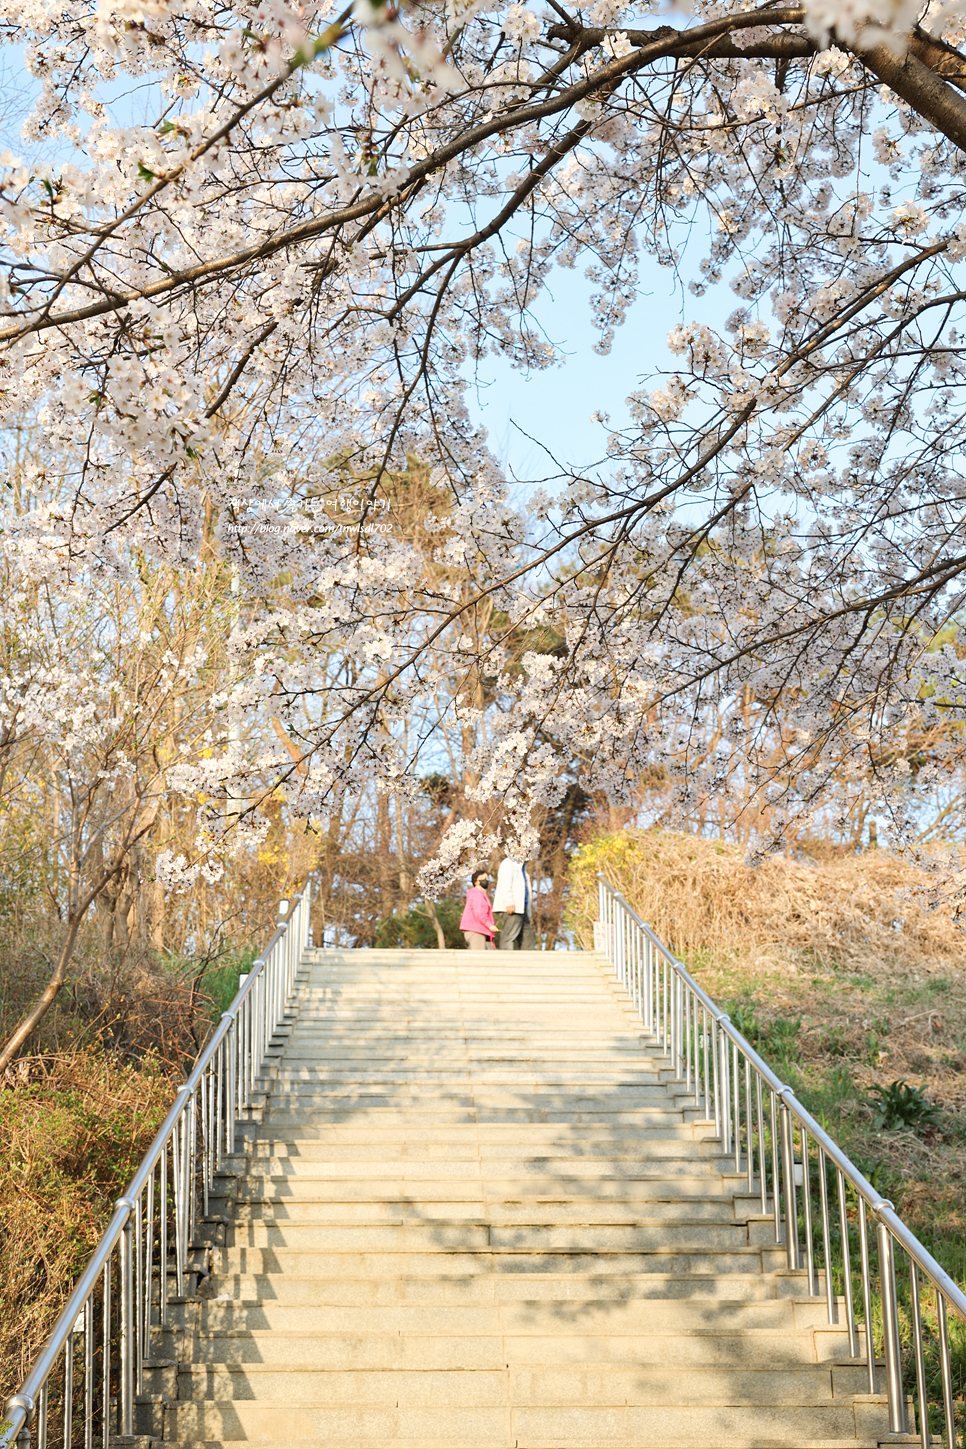 수원 근교 봄 나들이 데이트 경기도 의왕 벚꽃명소 백운호수